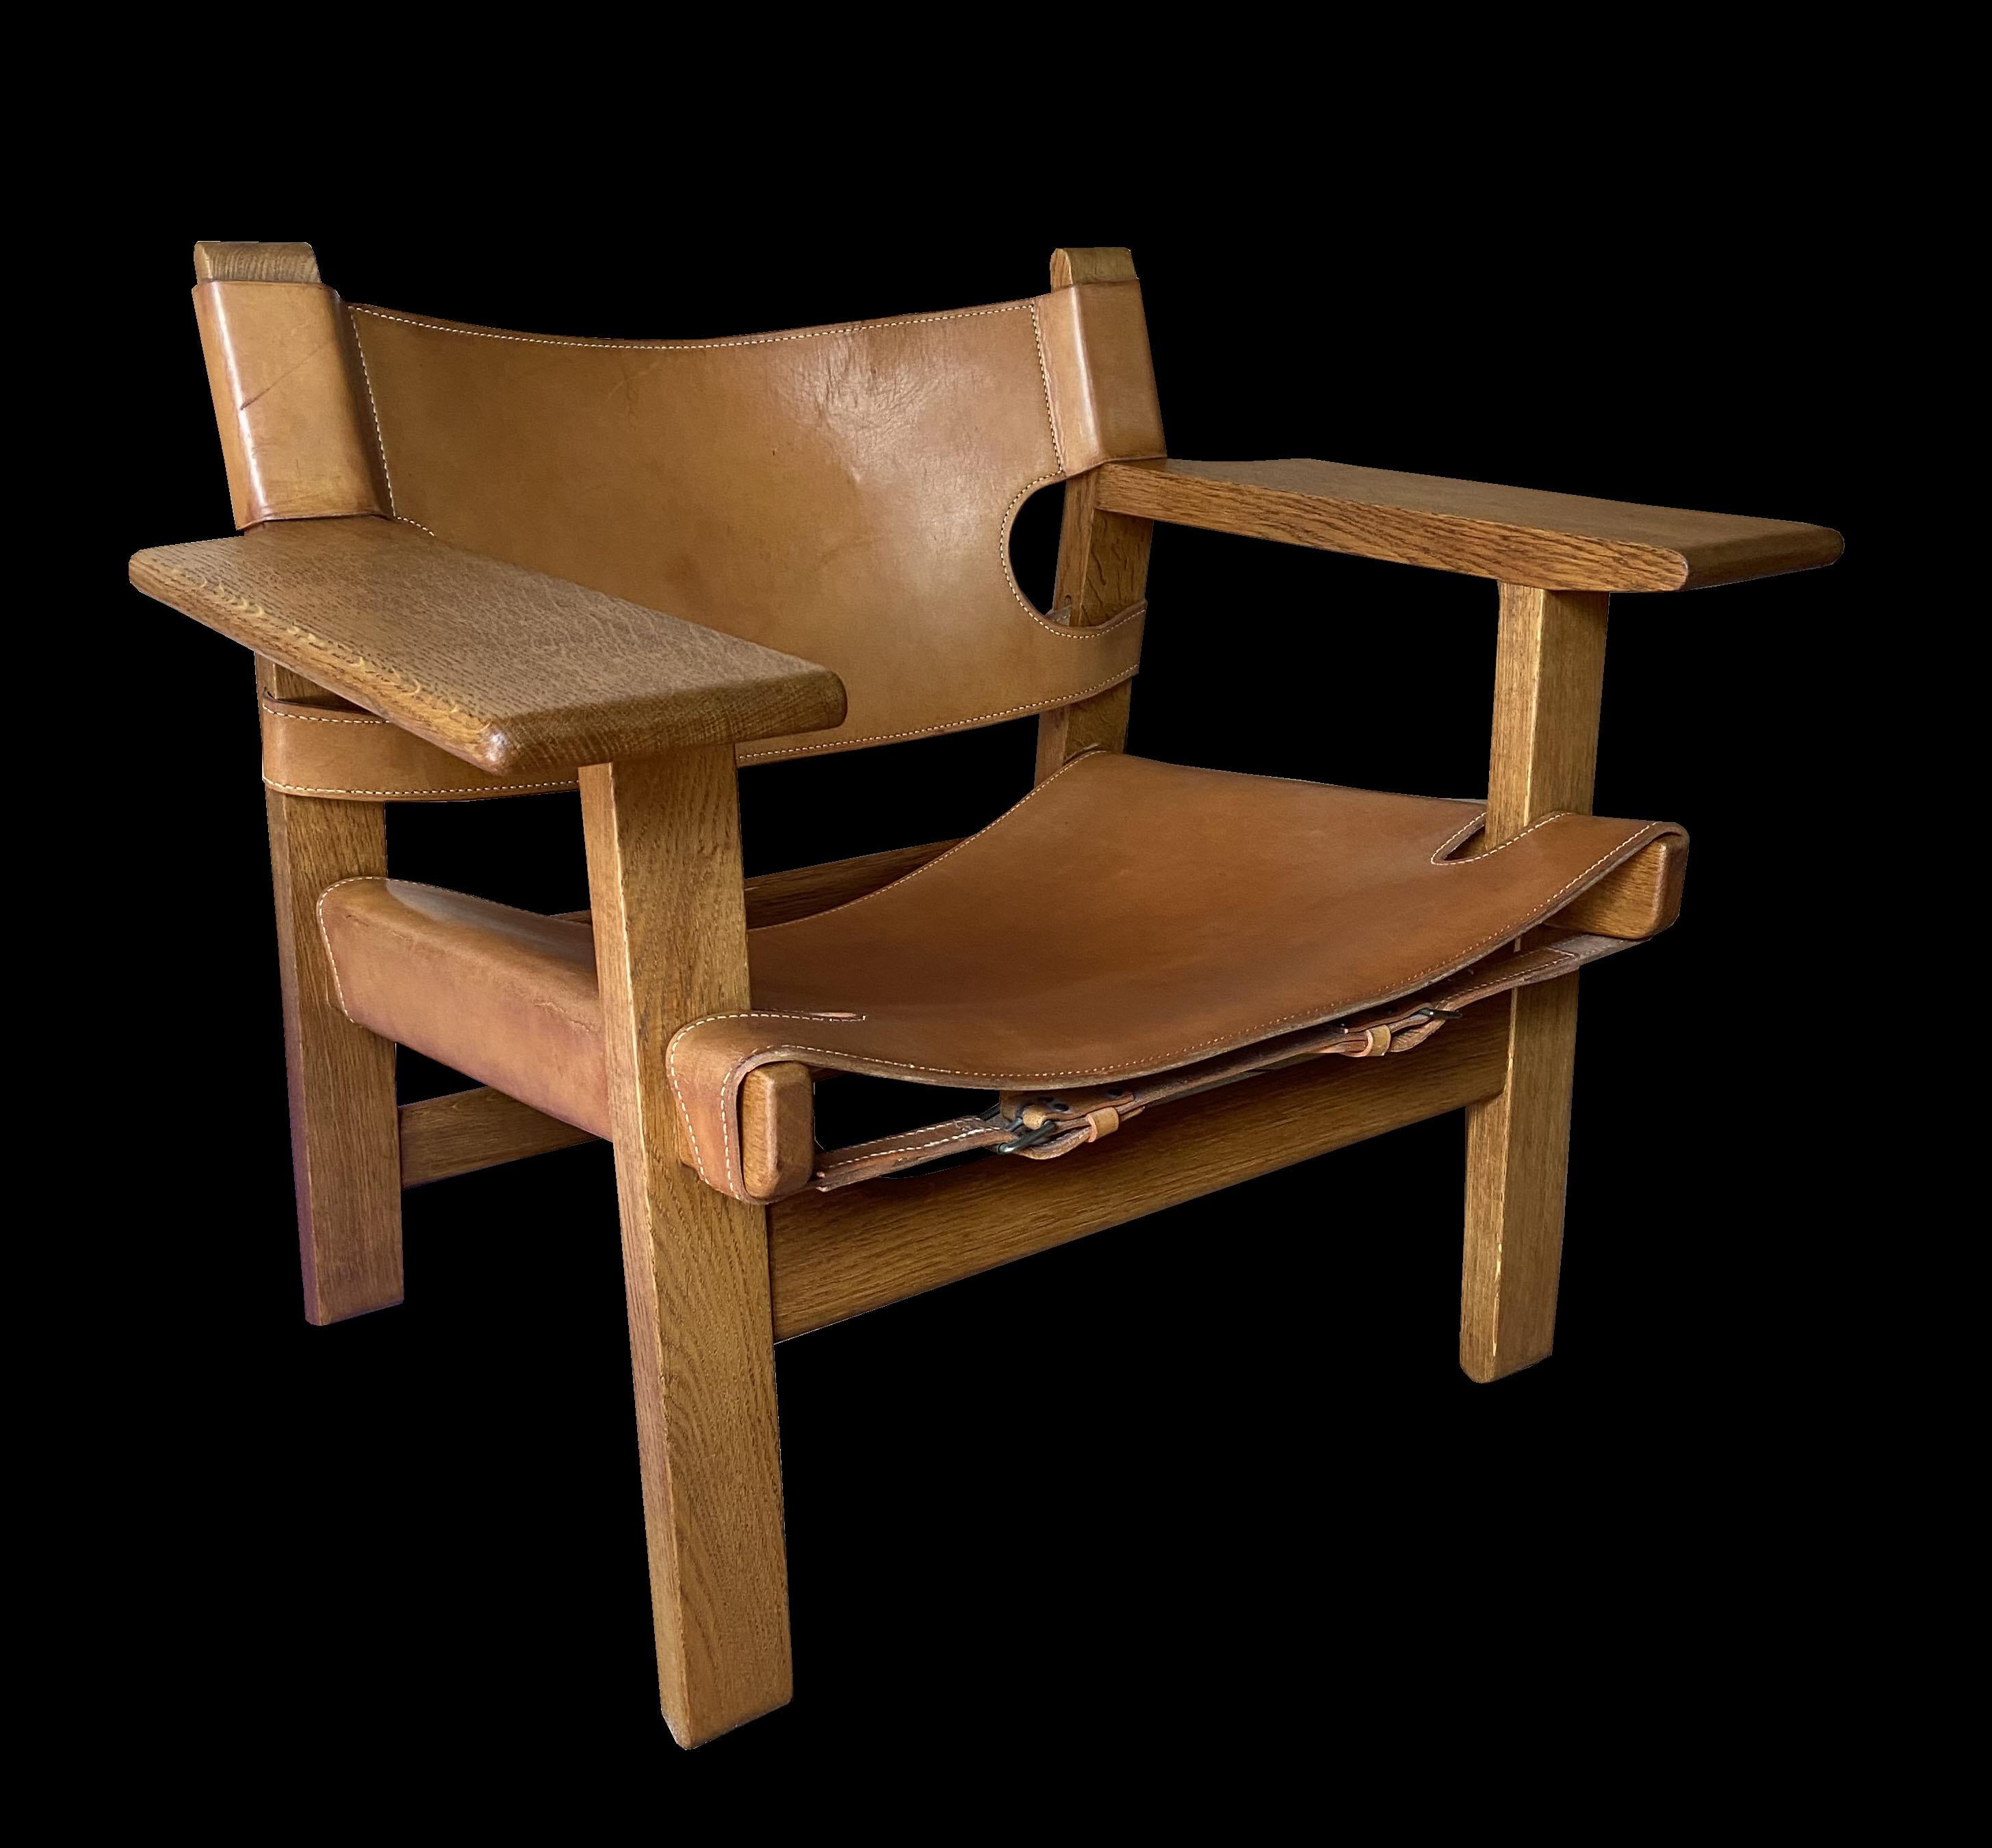 Ein sehr schönes, sauberes Beispiel des klassischen spanischen Stuhls von Mogensen, dies ist eines der früheren Exemplare mit den doppelten hinteren Bahren. Die Eiche und Leder sind beide in sehr gutem Zustand, keine schrecklichen Flecken oder